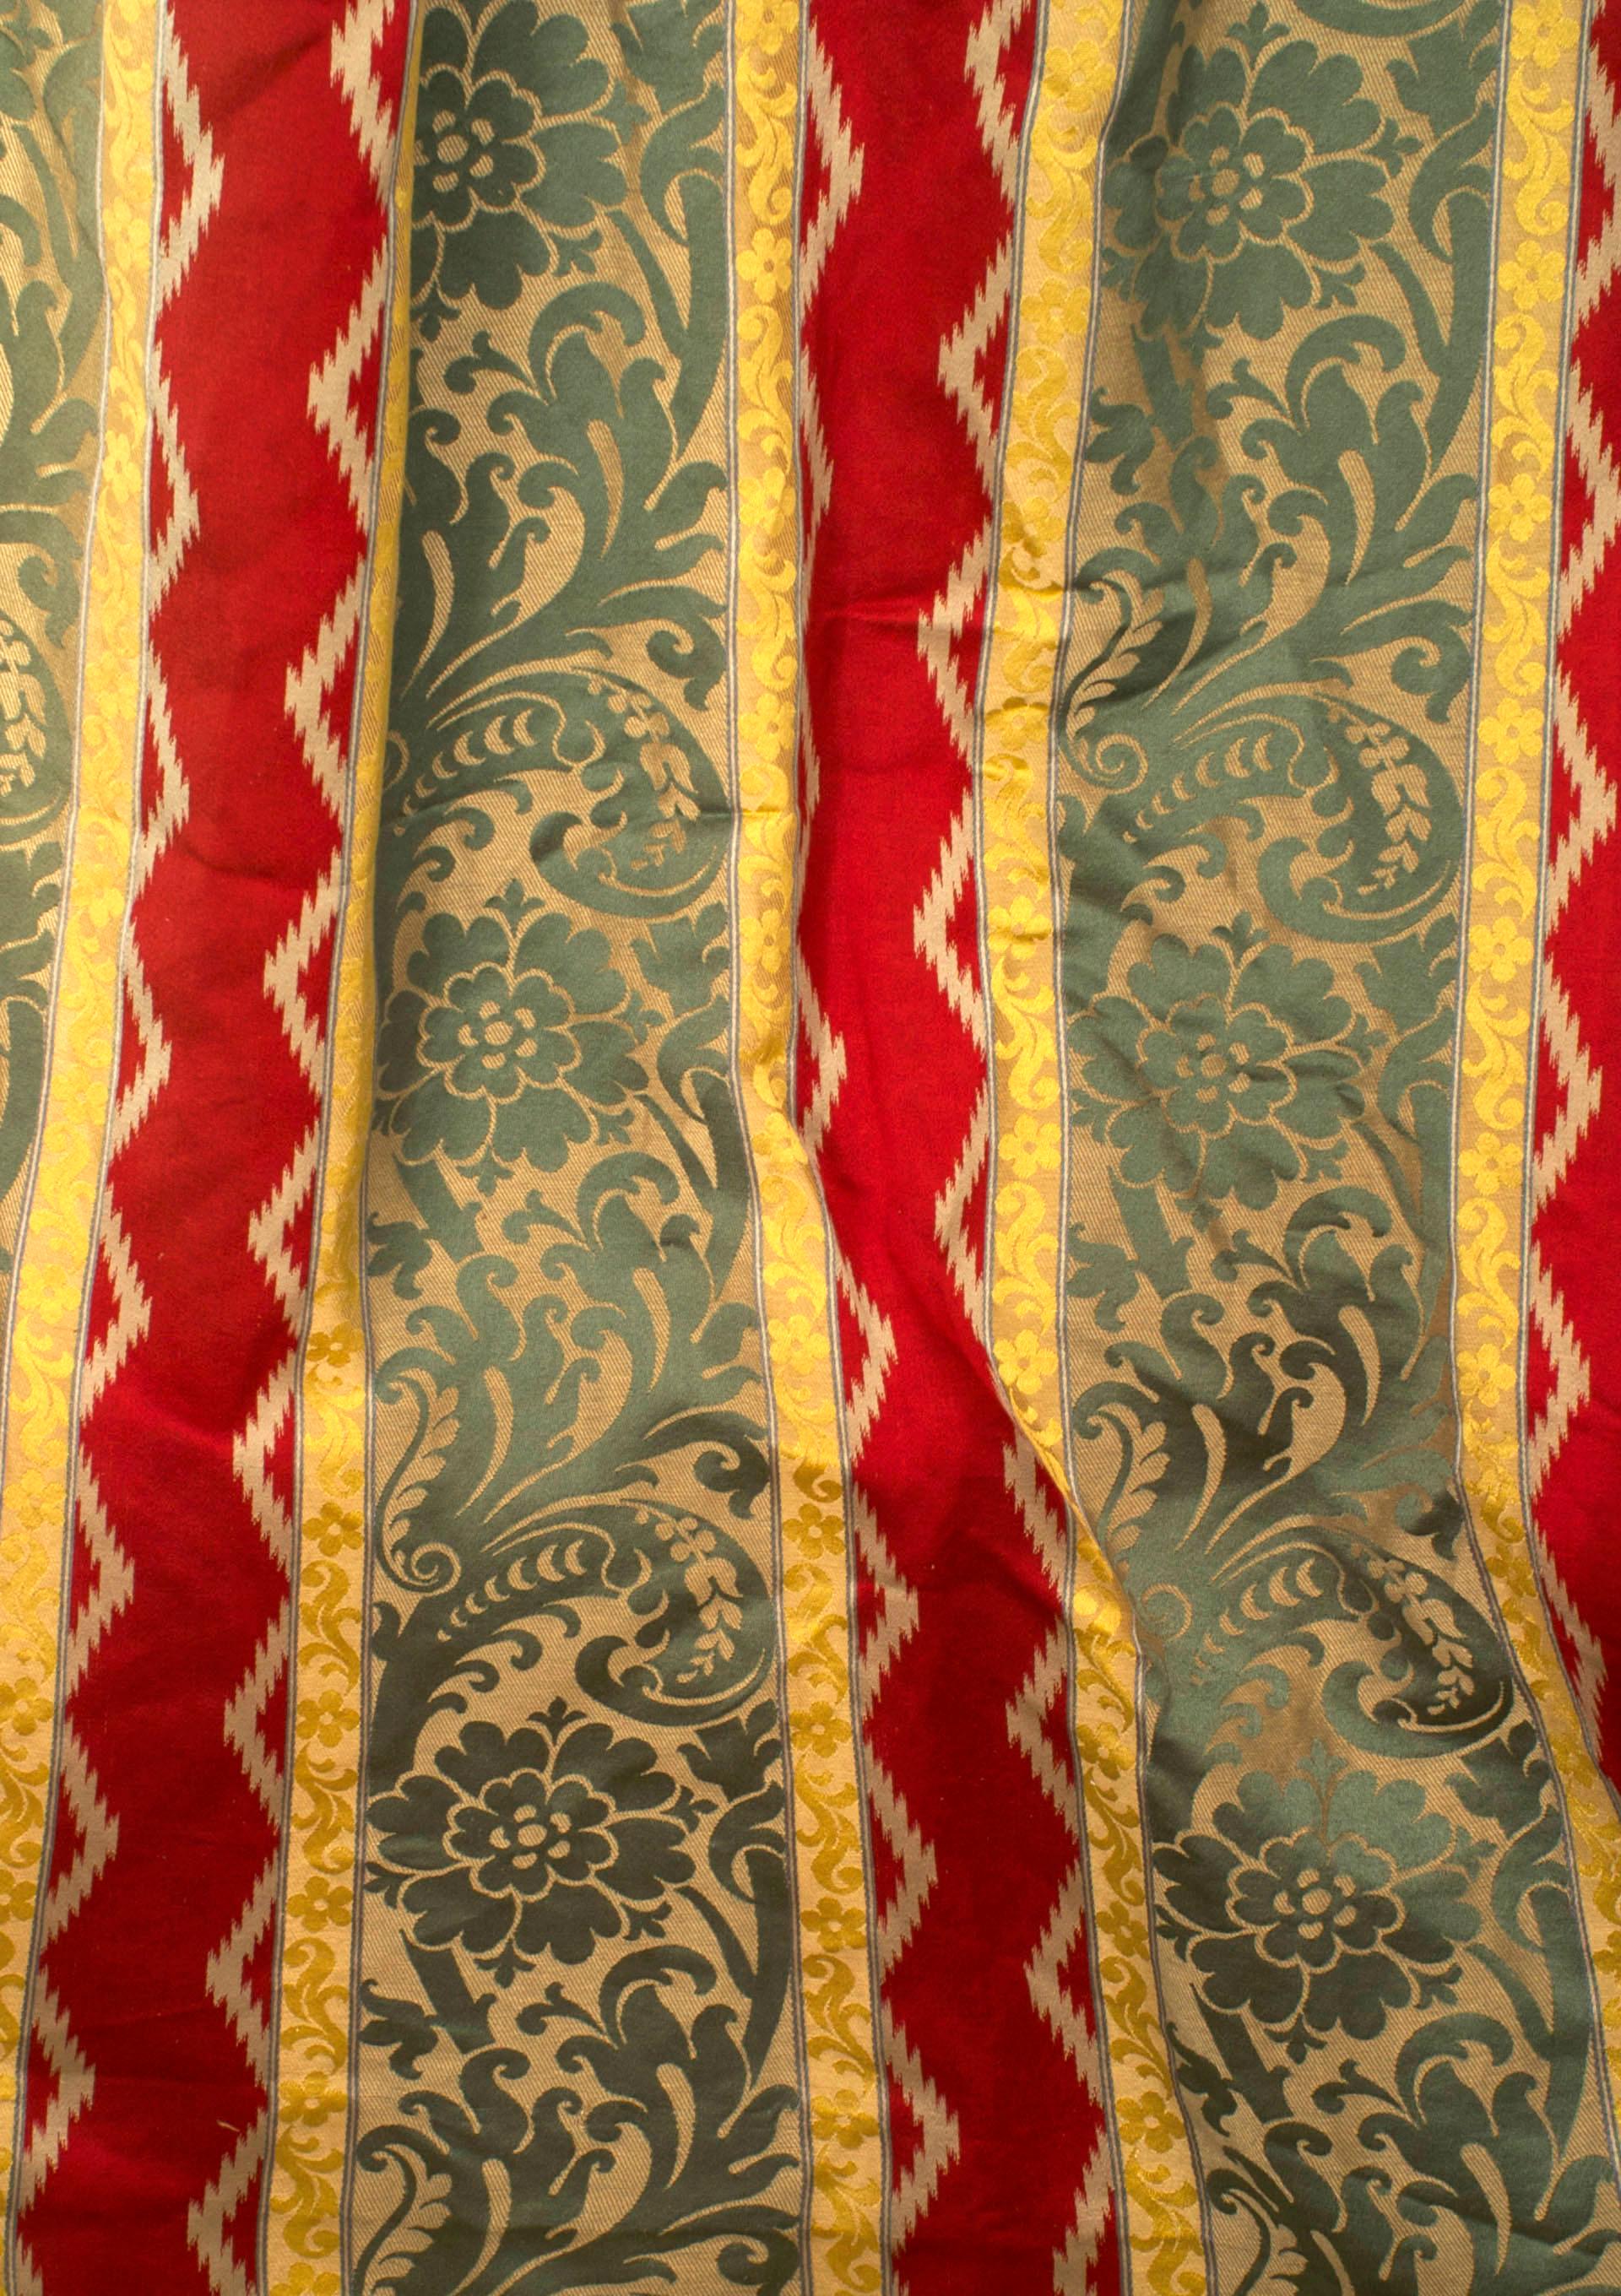 3 paires de rideaux damassés de style victorien français avec des panneaux à motifs floraux et de volutes à rayures vertes, rouges et or, avec anneau en laiton doré pour les suspendre (prix par paire).
 